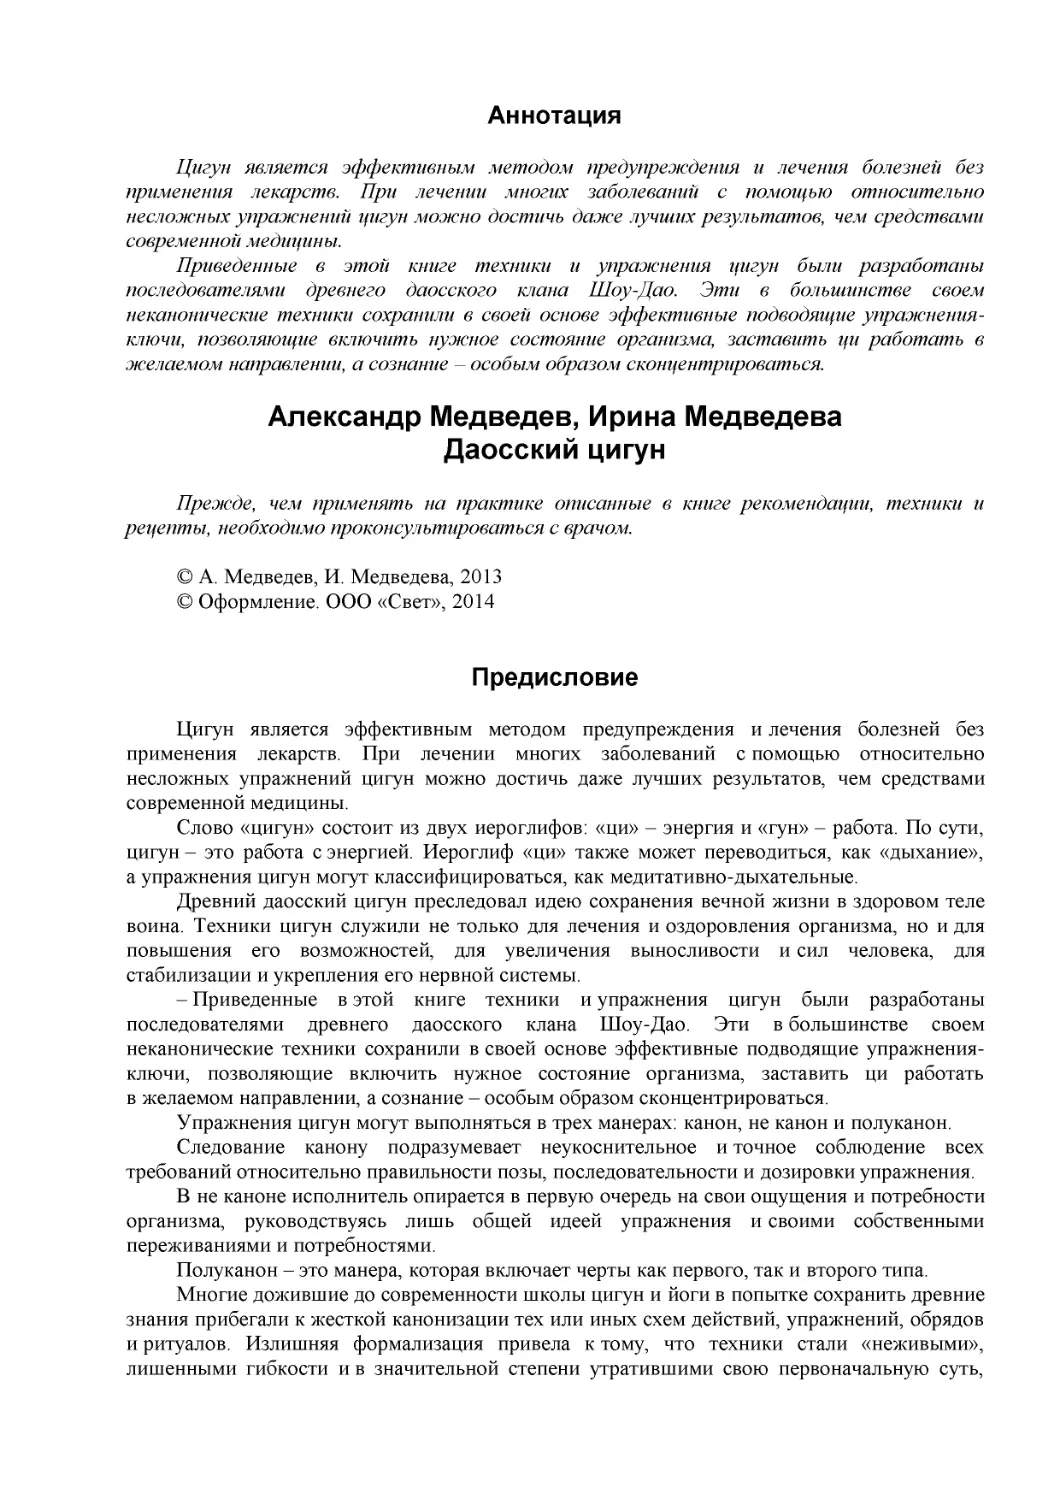 Аннотация
Александр Медведев, Ирина Медведева
Даосский цигун (1)
Предисловие